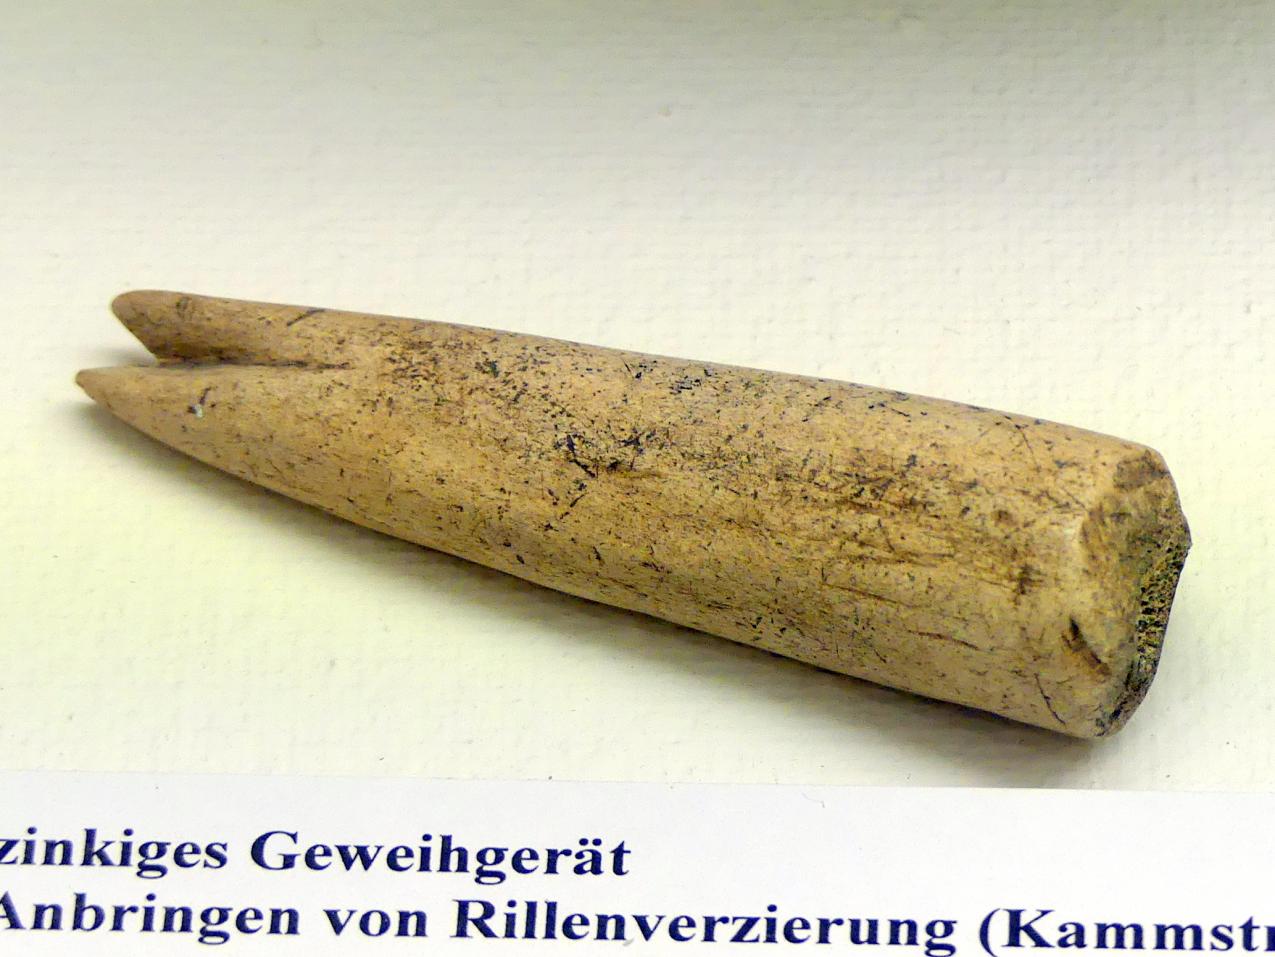 Zweizinkiges Geweihgerät, Spätlatènezeit D, 700 - 100 v. Chr.